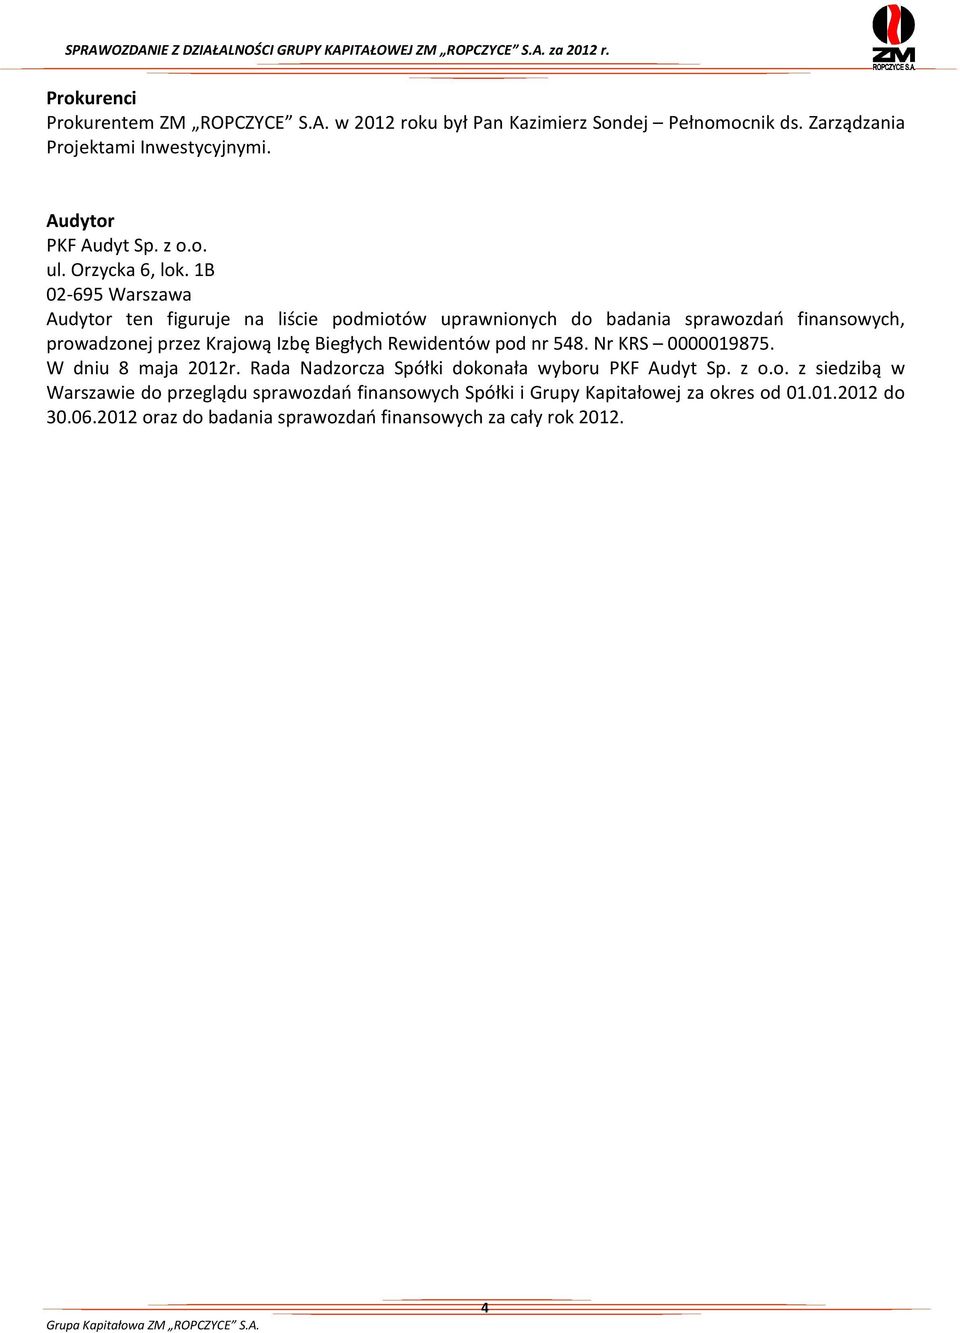 1B 02-695 Warszawa Audytor ten figuruje na liście podmiotów uprawnionych do badania sprawozdań finansowych, prowadzonej przez Krajową Izbę Biegłych